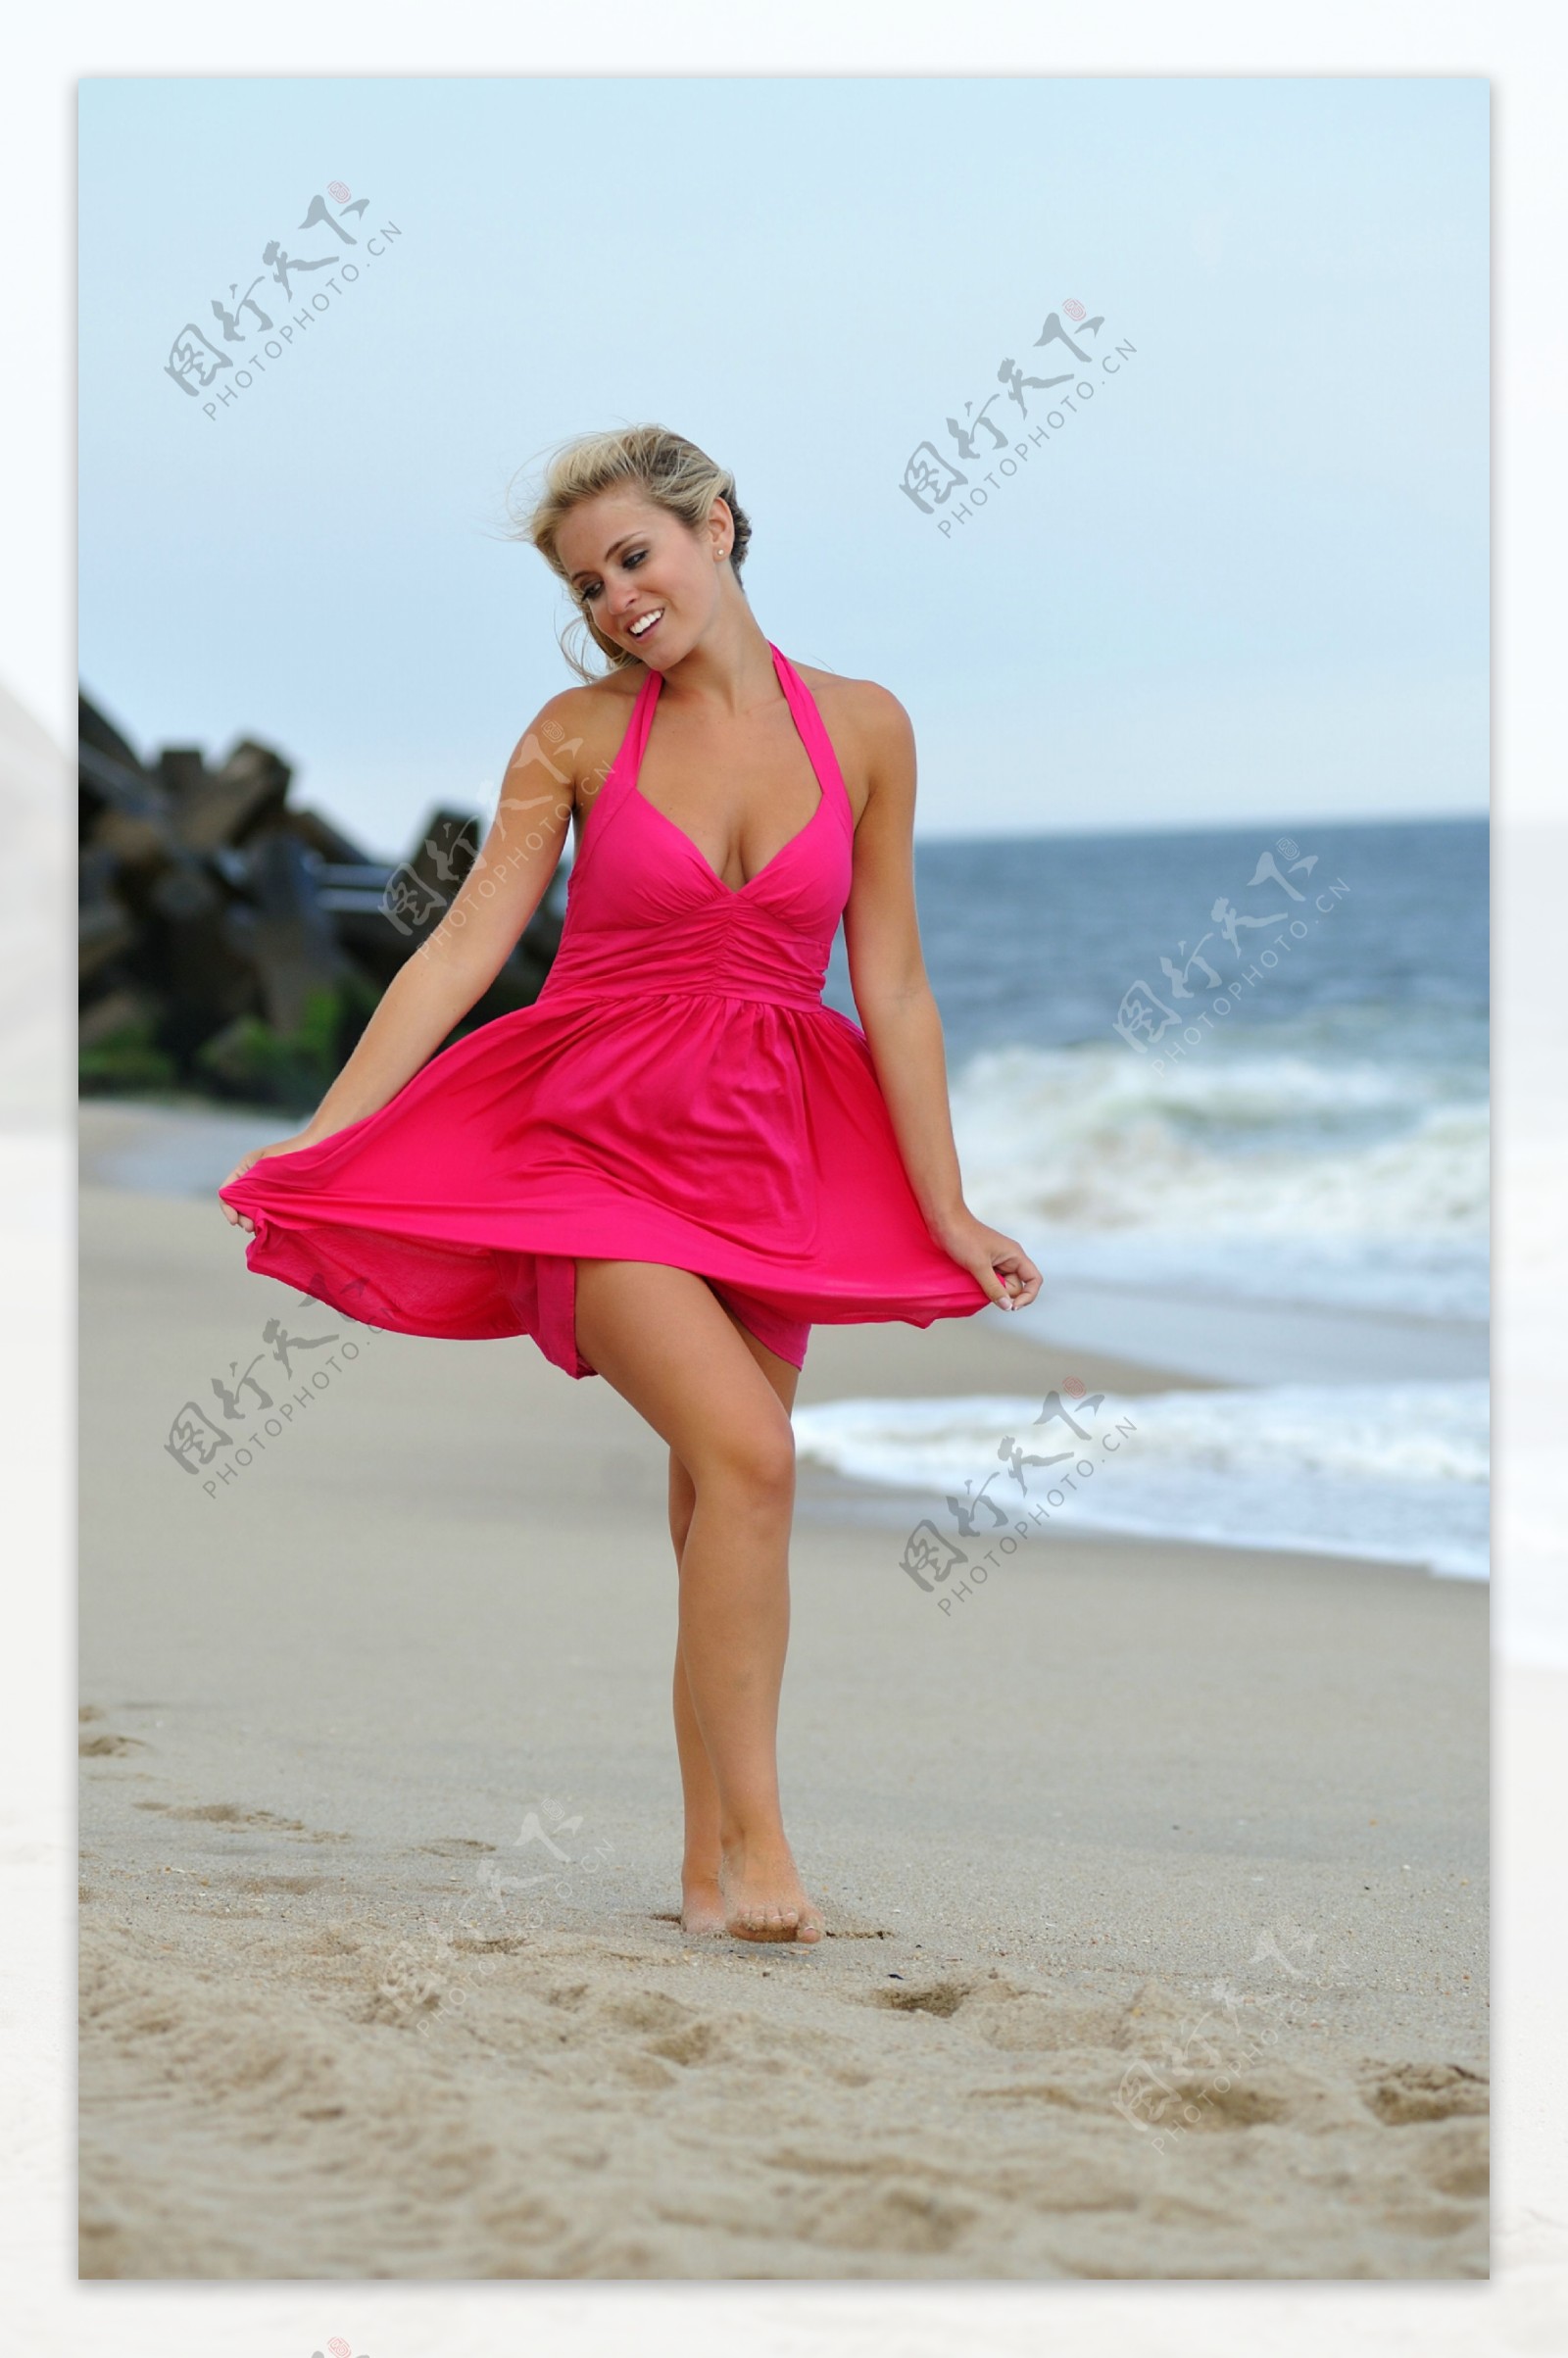 沙滩上穿裙子的美女图片